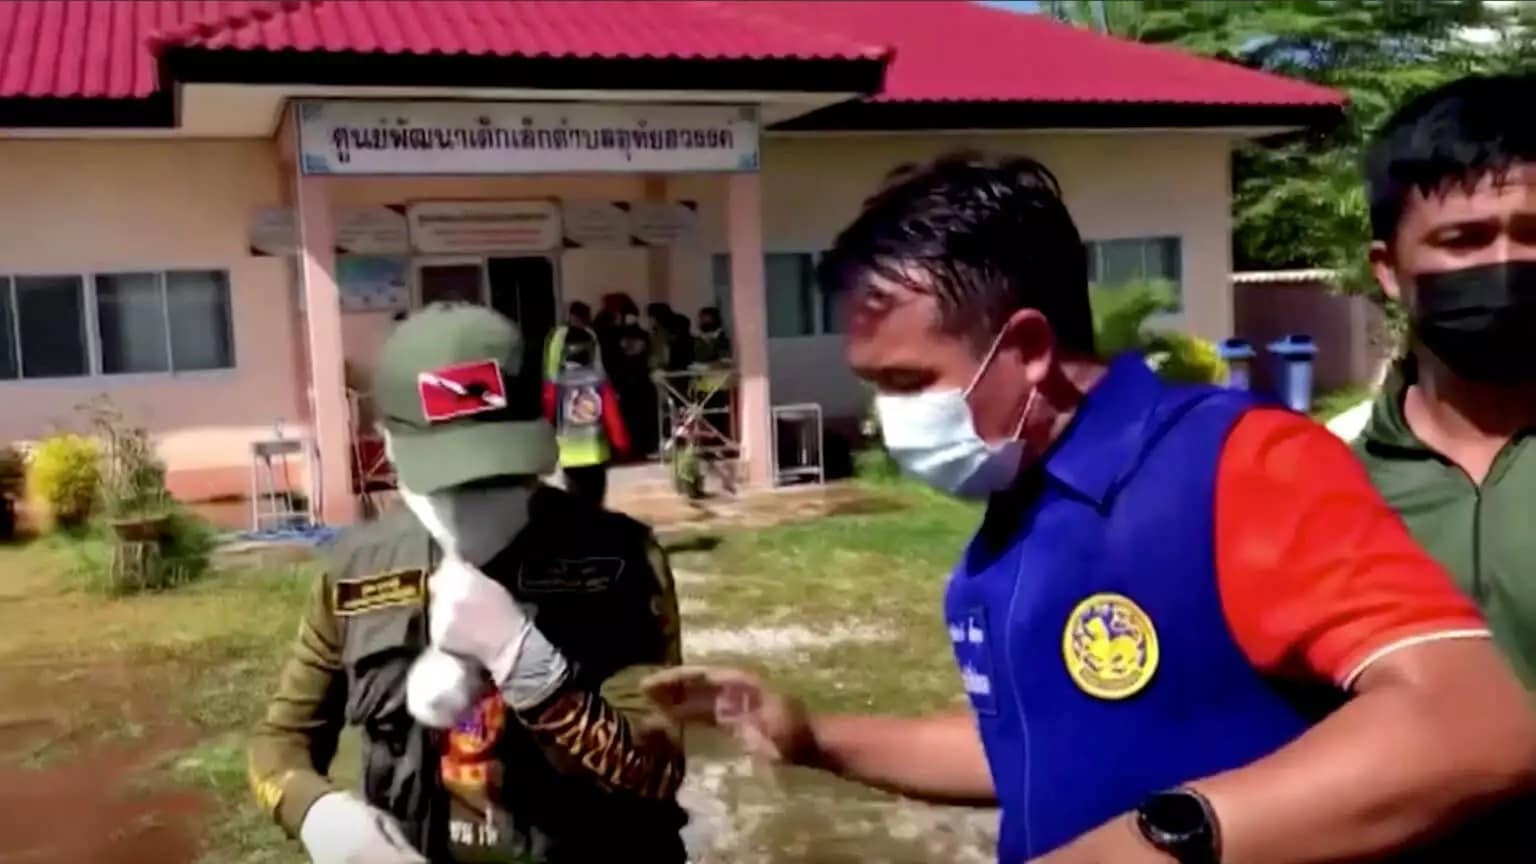 Τραγωδία σε παιδικό σταθμό στην Ταϊλάνδη: Σκότωσε 34 ανθρώπους ανάμεσα τους και την οικογένειά του και αυτοκτόνησε – ΒΙΝΤΕΟ